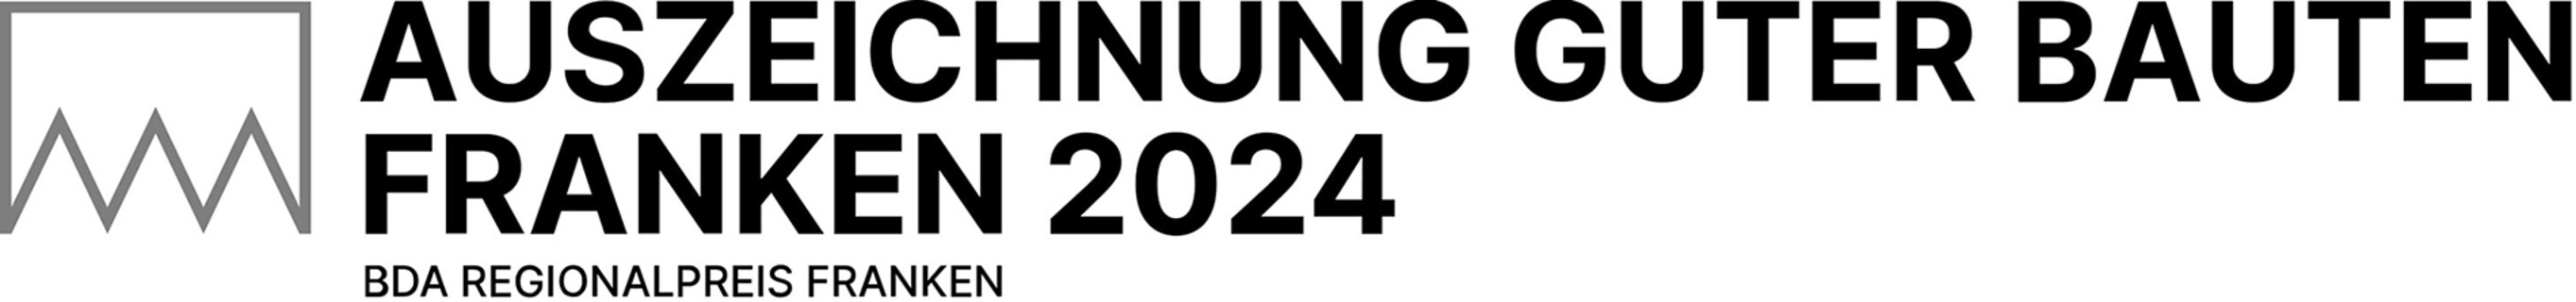 Auszeichnung Guter Bauten in Franken 2024 | Logo: © Büro Wilhelm